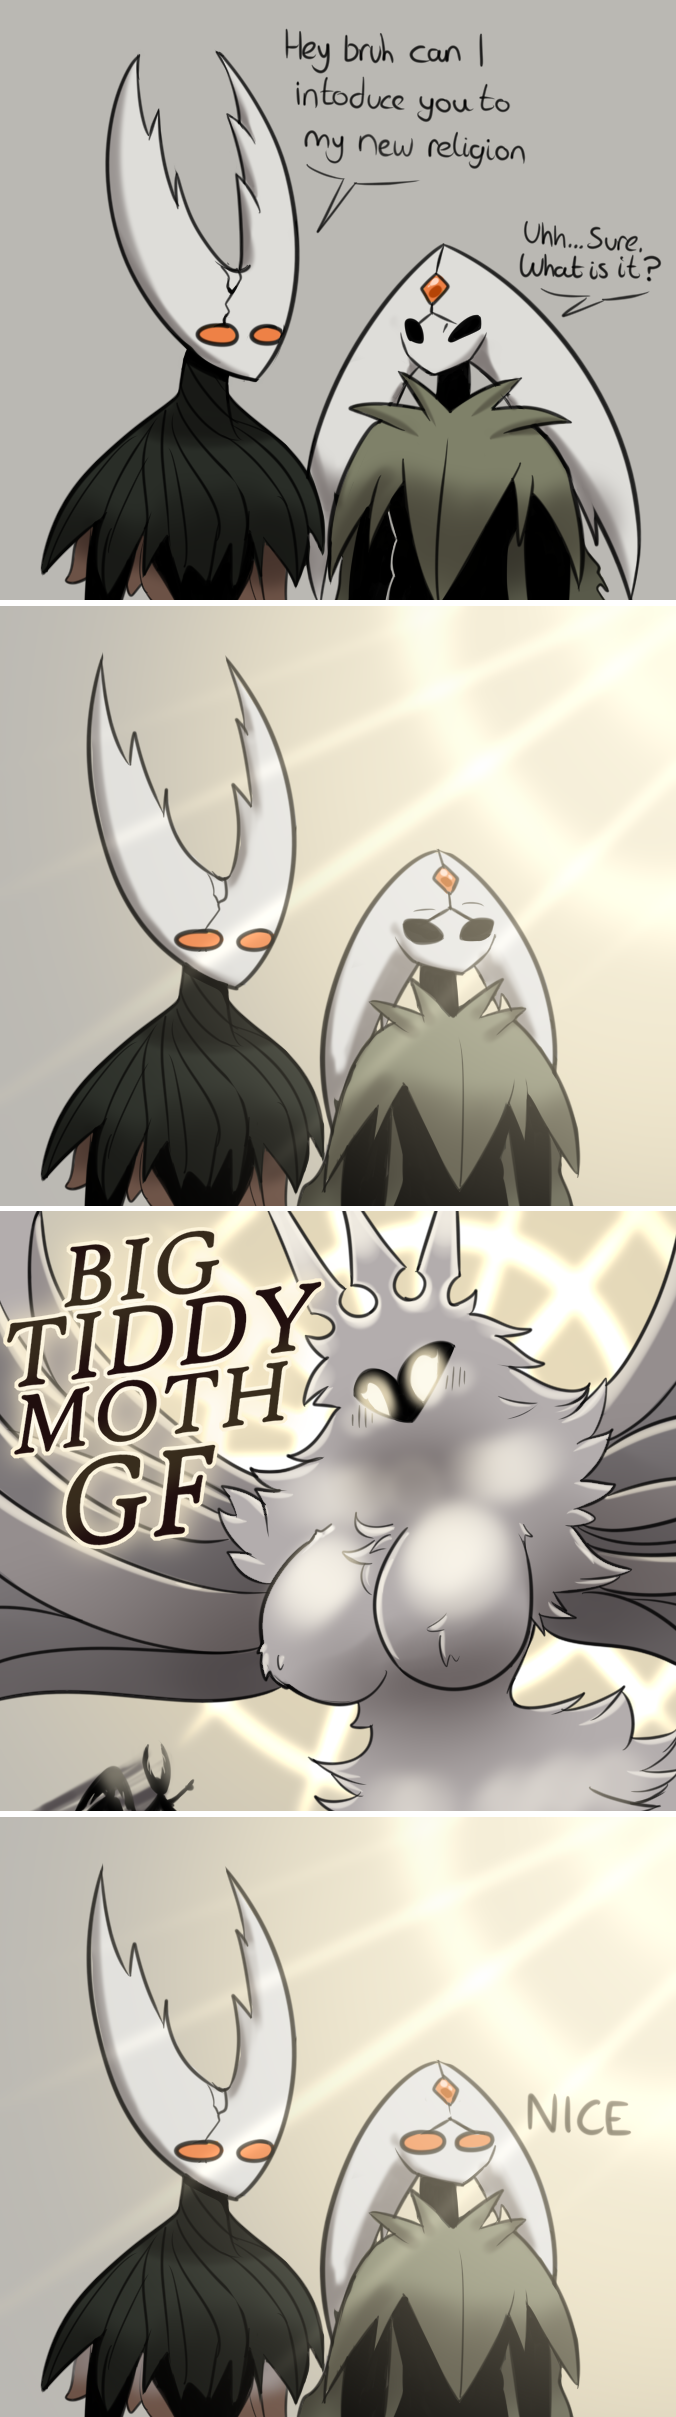 Big tiddy moth gf